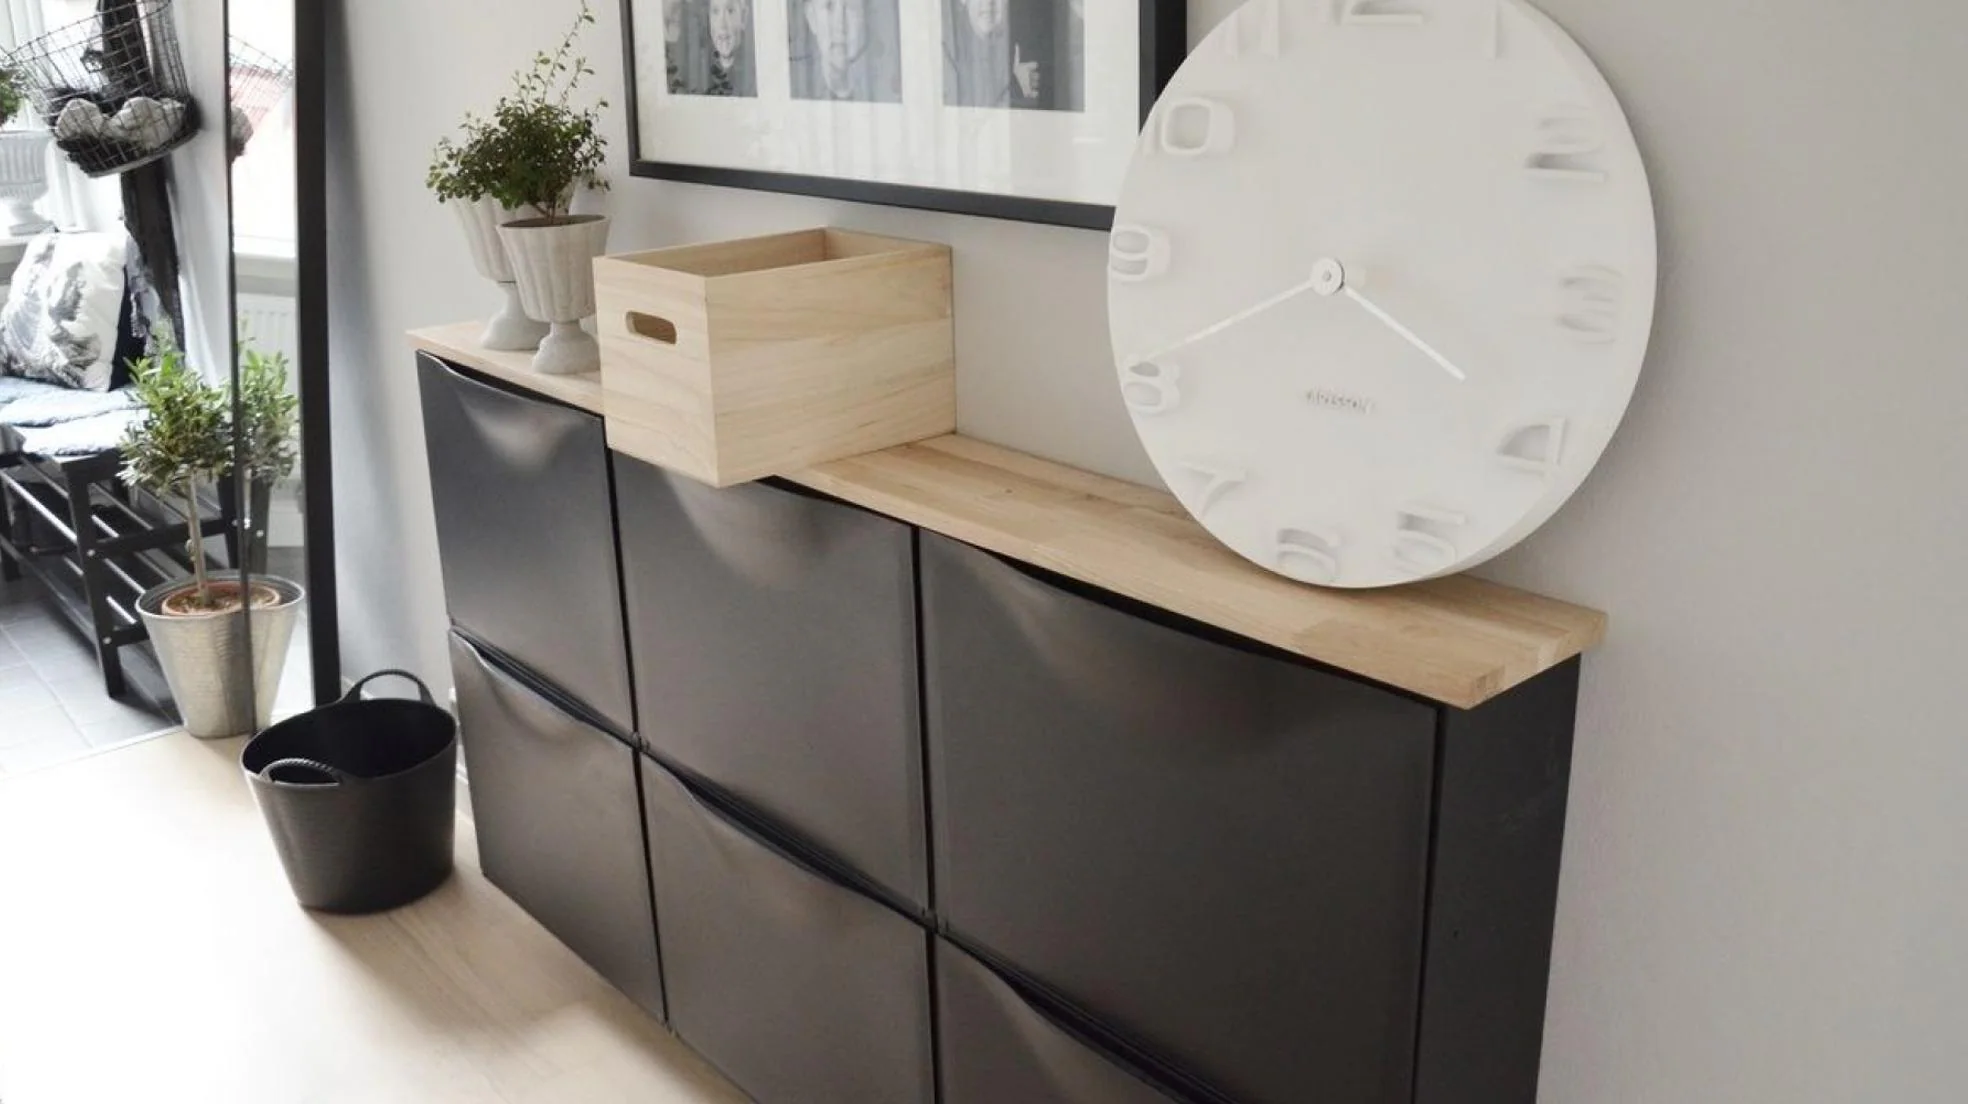 El zapatero más bonito y barato de IKEA que puedes transformar en un precioso mueble de lujo con estas 10 ideas DIY geniales (y muy Mujer Hoy